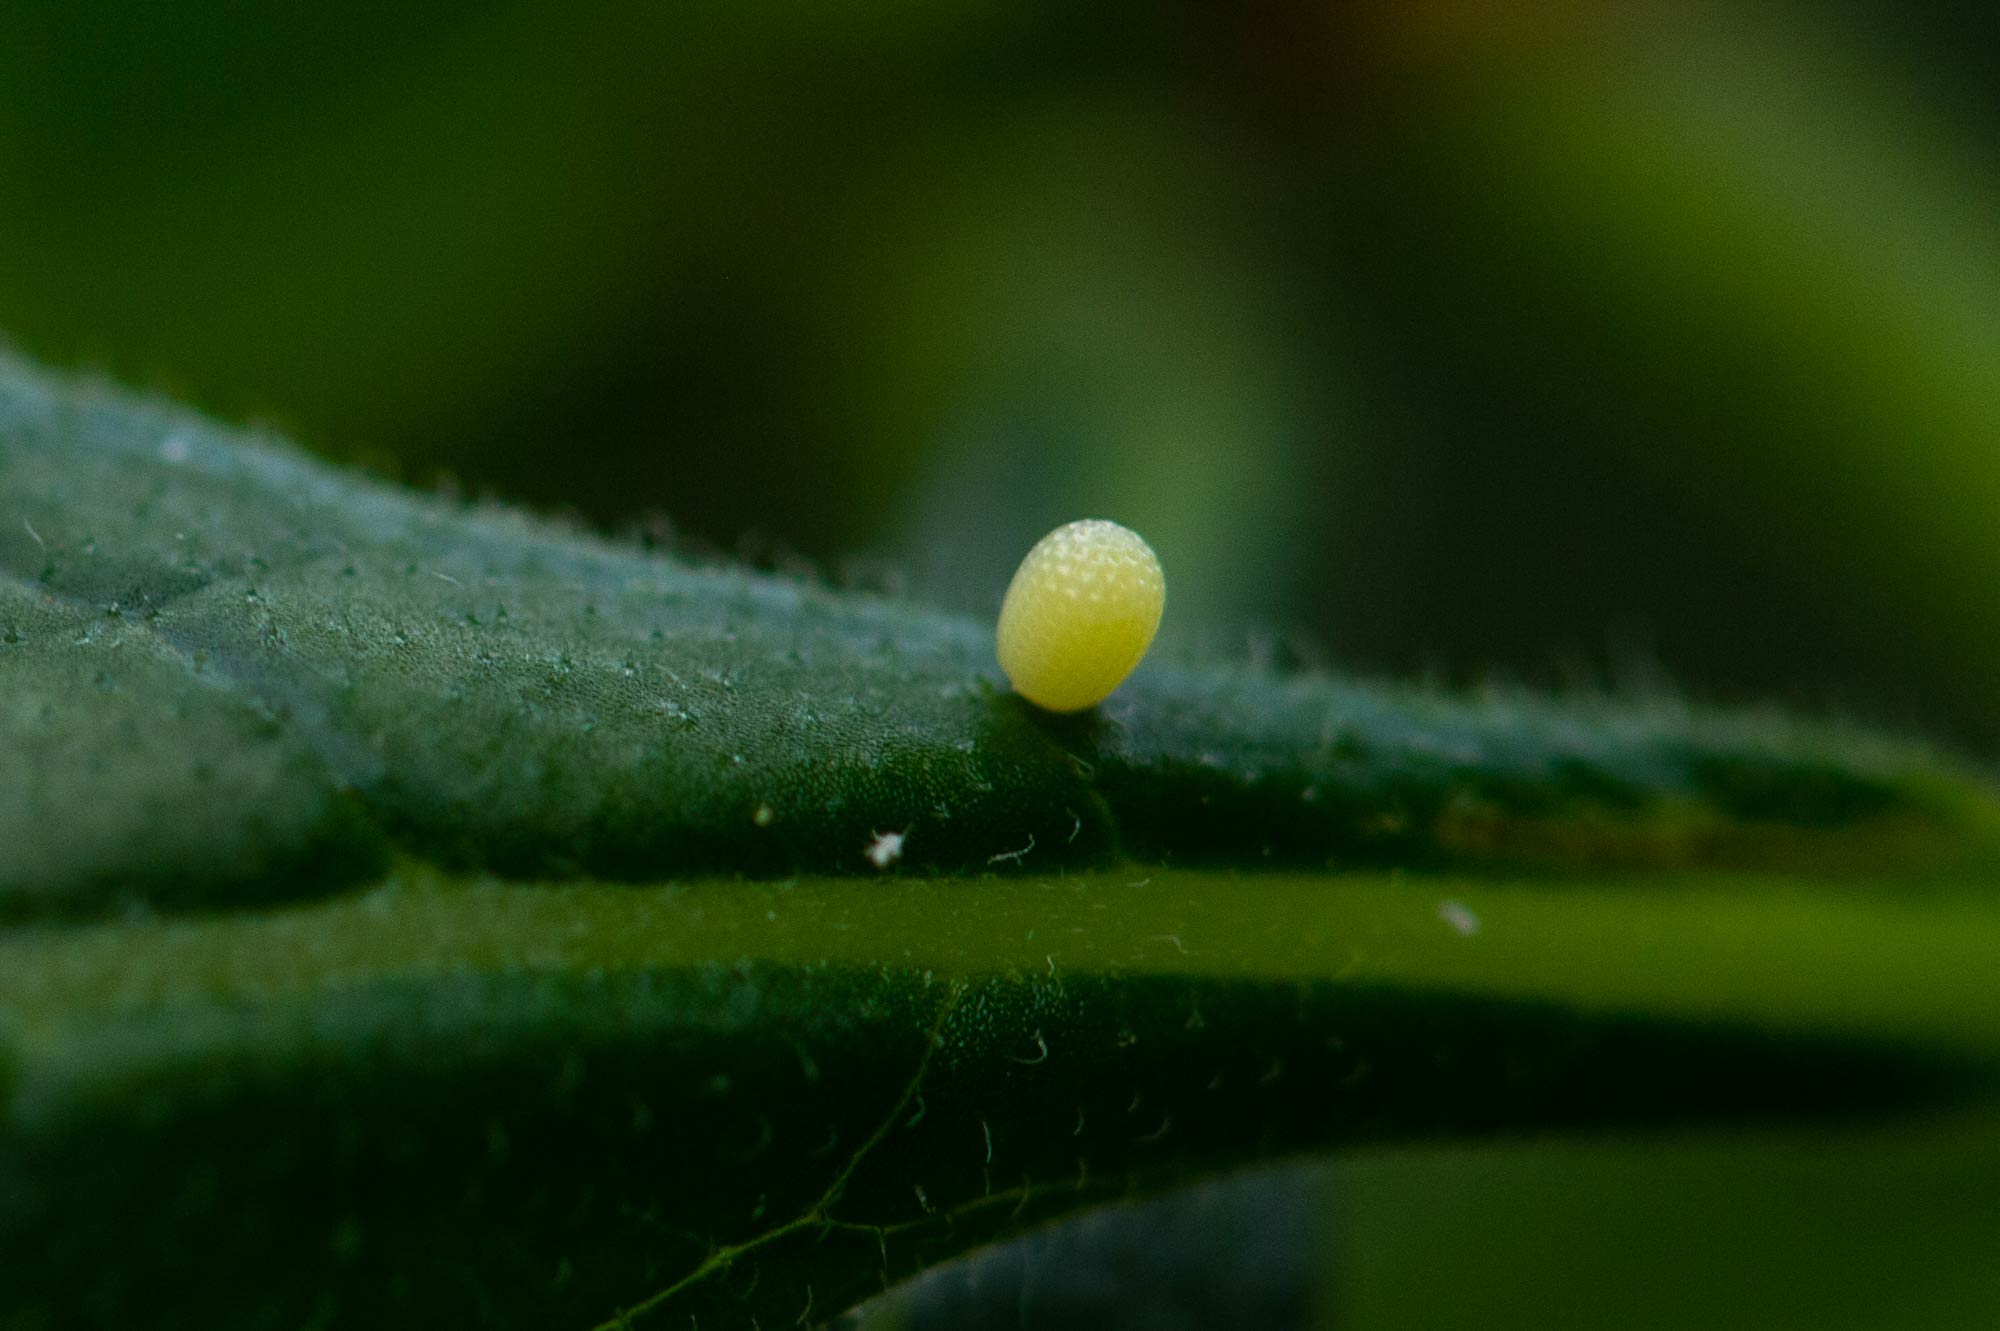 オオゴマダラの幼虫から特徴まで 虫の写真と生態なら昆虫写真図鑑 ムシミル